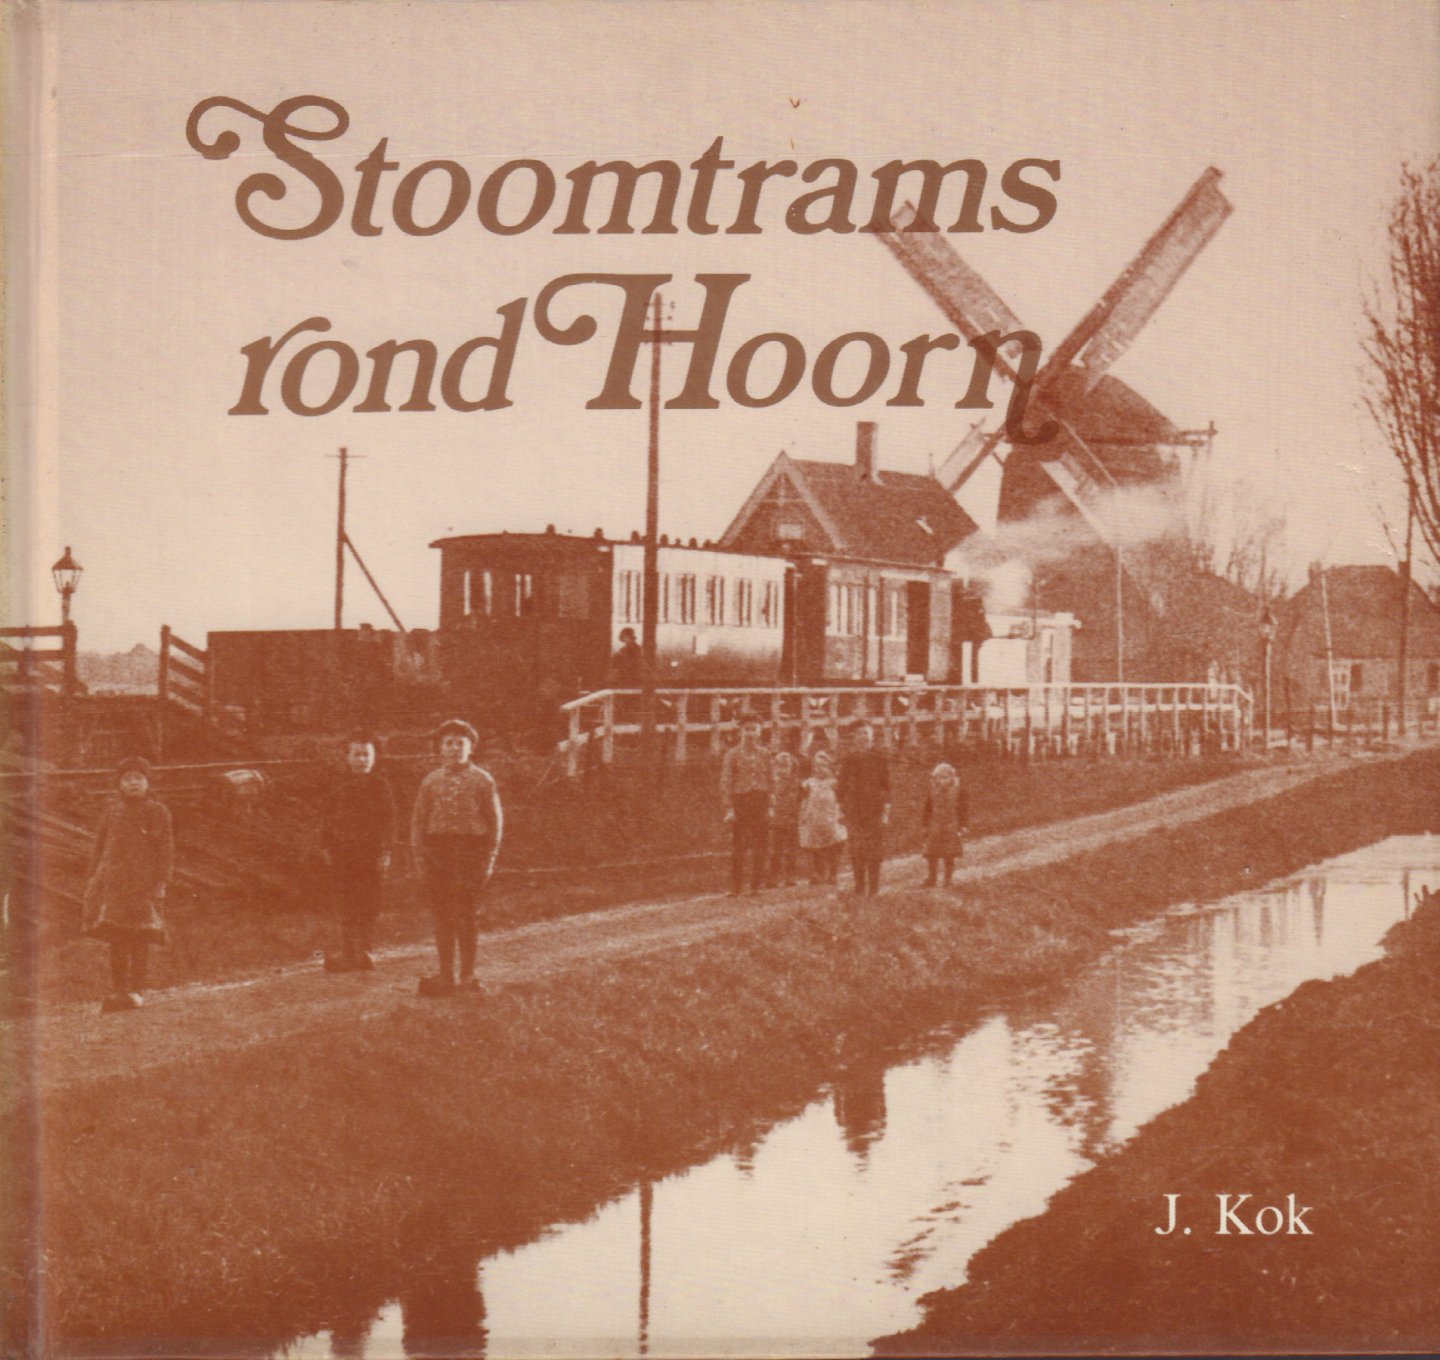 Kok, J. - Stoomtrams Rond Hoorn (Boot-, trein- en tramverbindingen in het oostelijk deel van West-Friesland), 144 pag. hardcover, goede staat